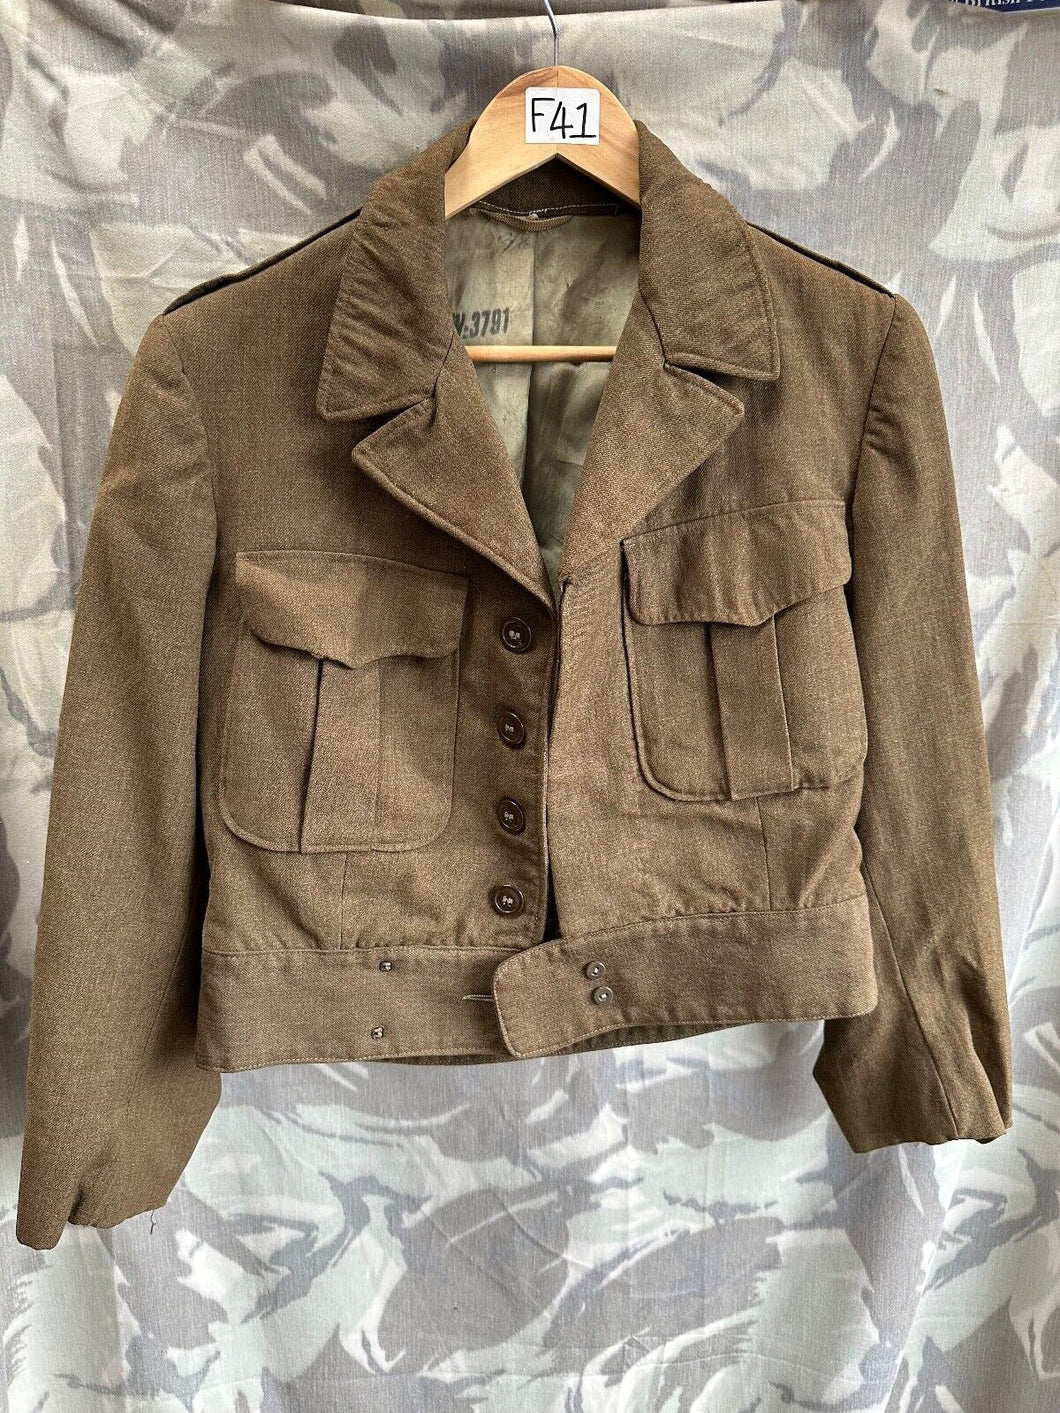 Original US Army Ike Jacket Uniform 36R